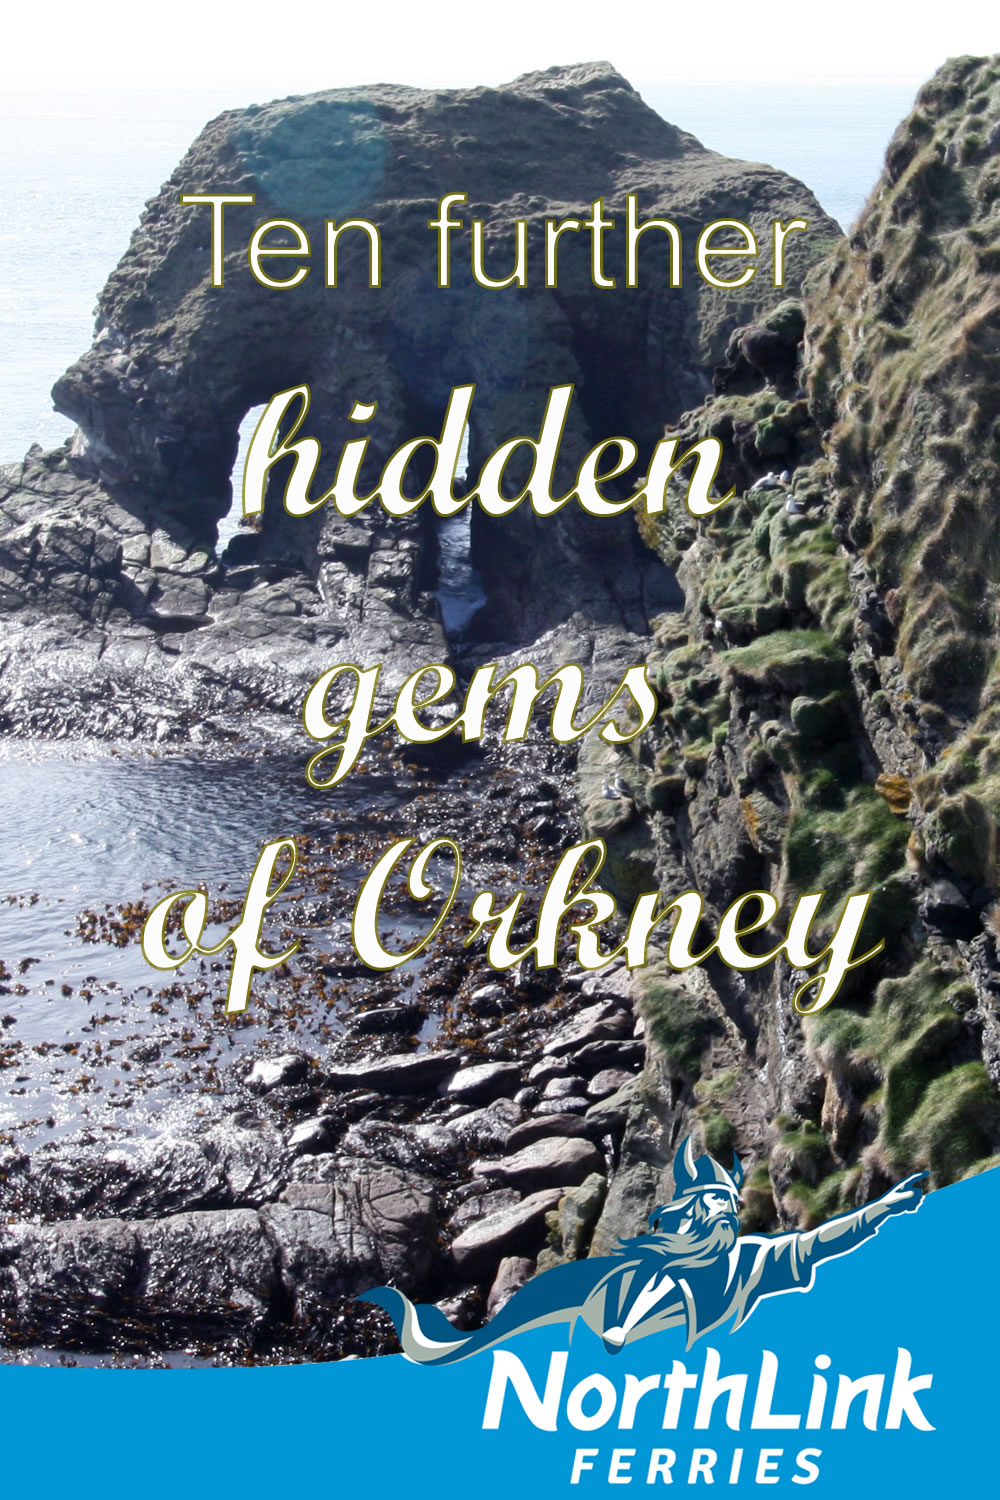 Ten further hidden gems of Orkney